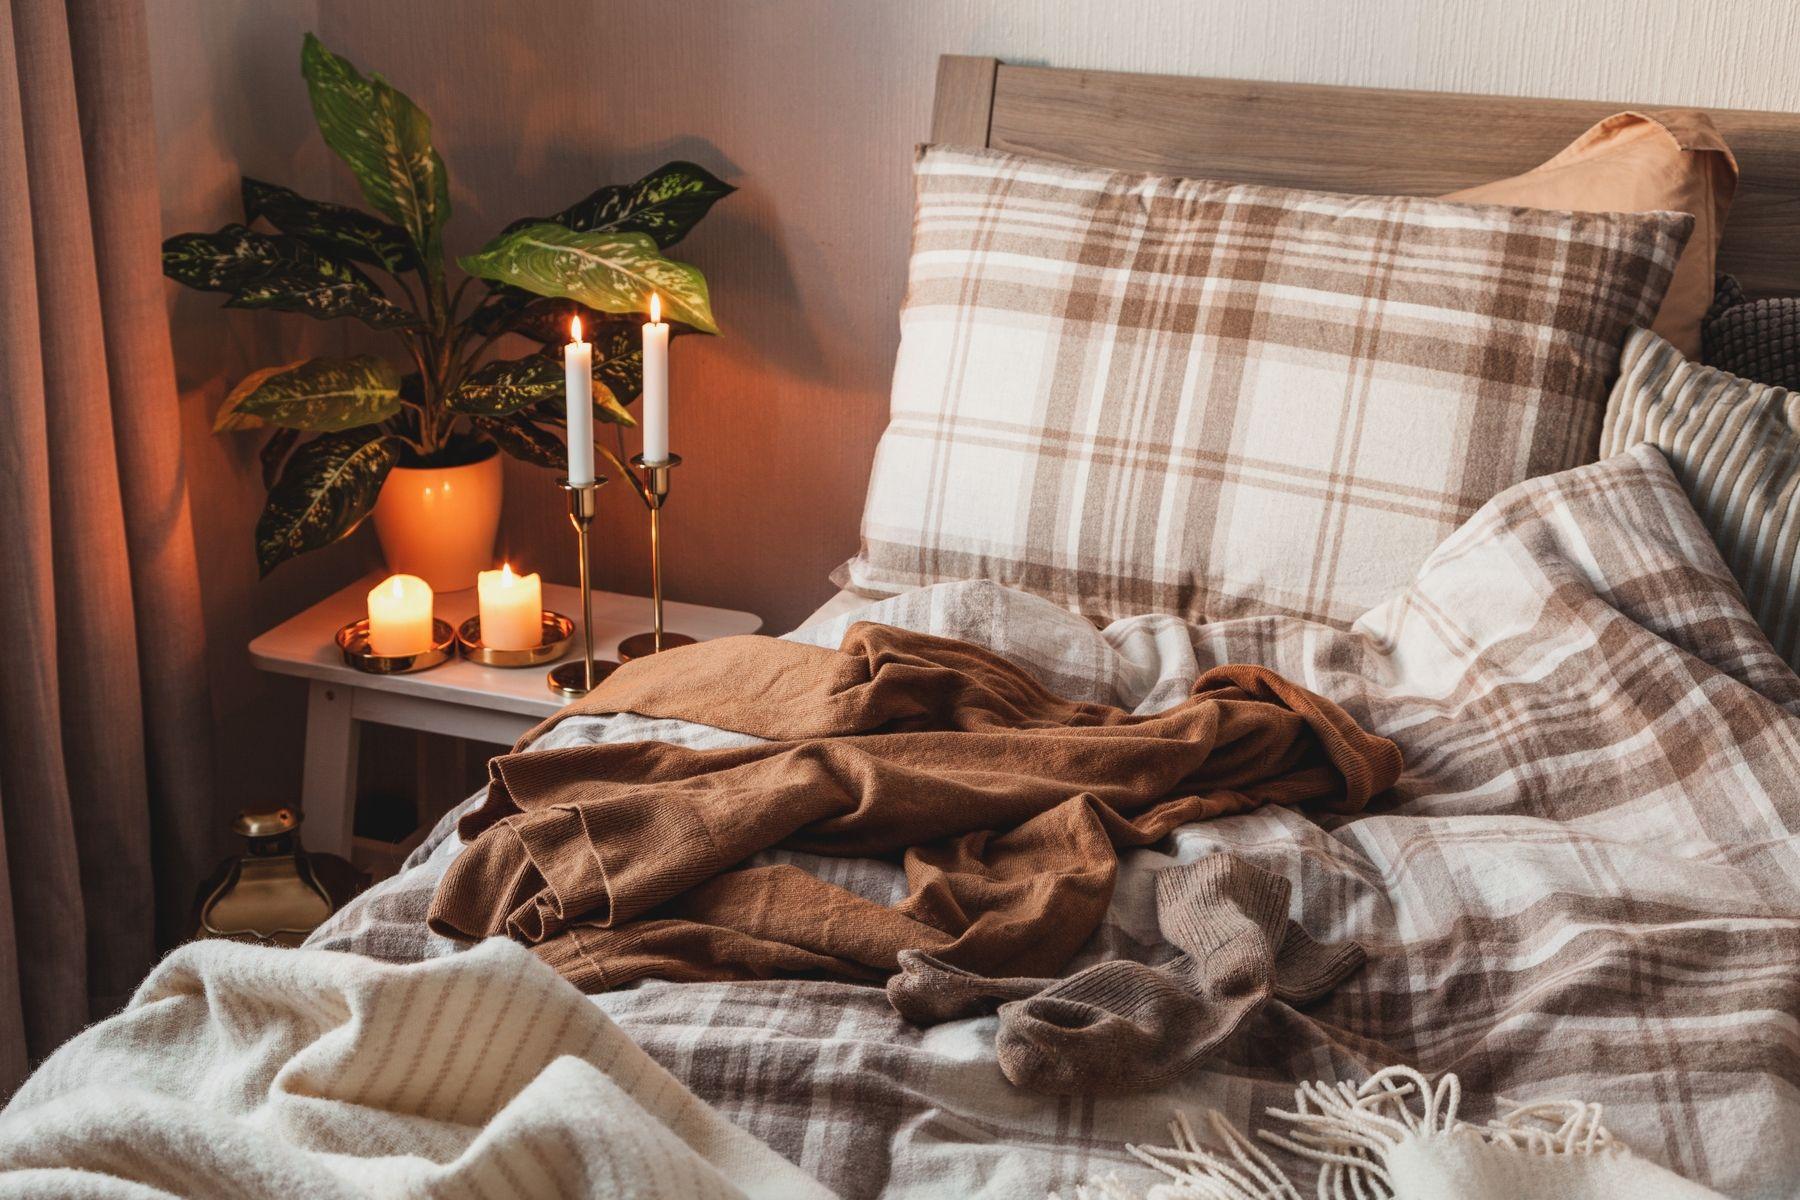 Mysig säng med tända ljus på nattduksbordet, grön växt och filtar i beige och brunt.